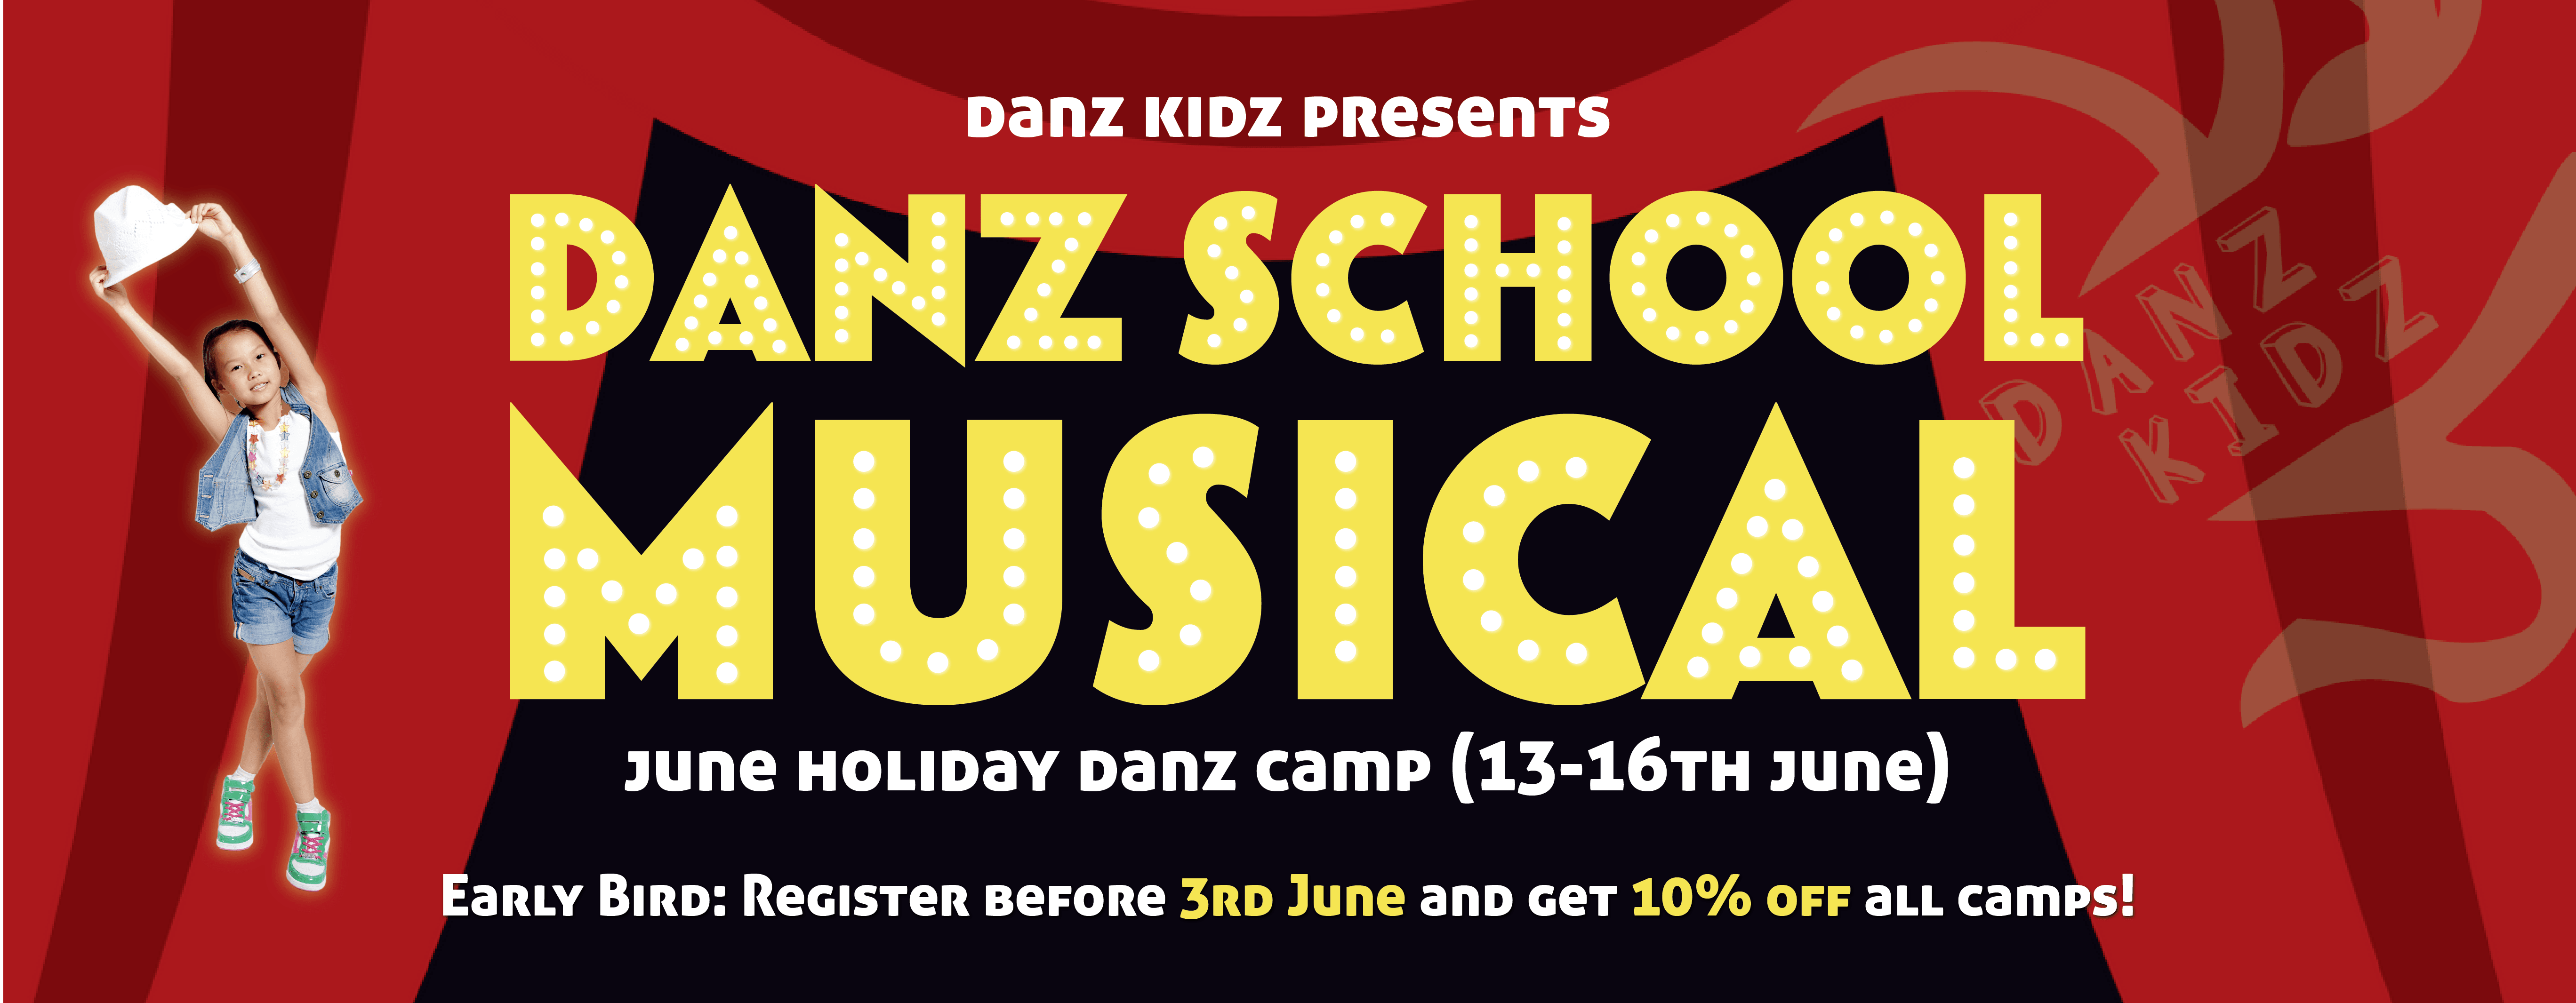 danz school musical header